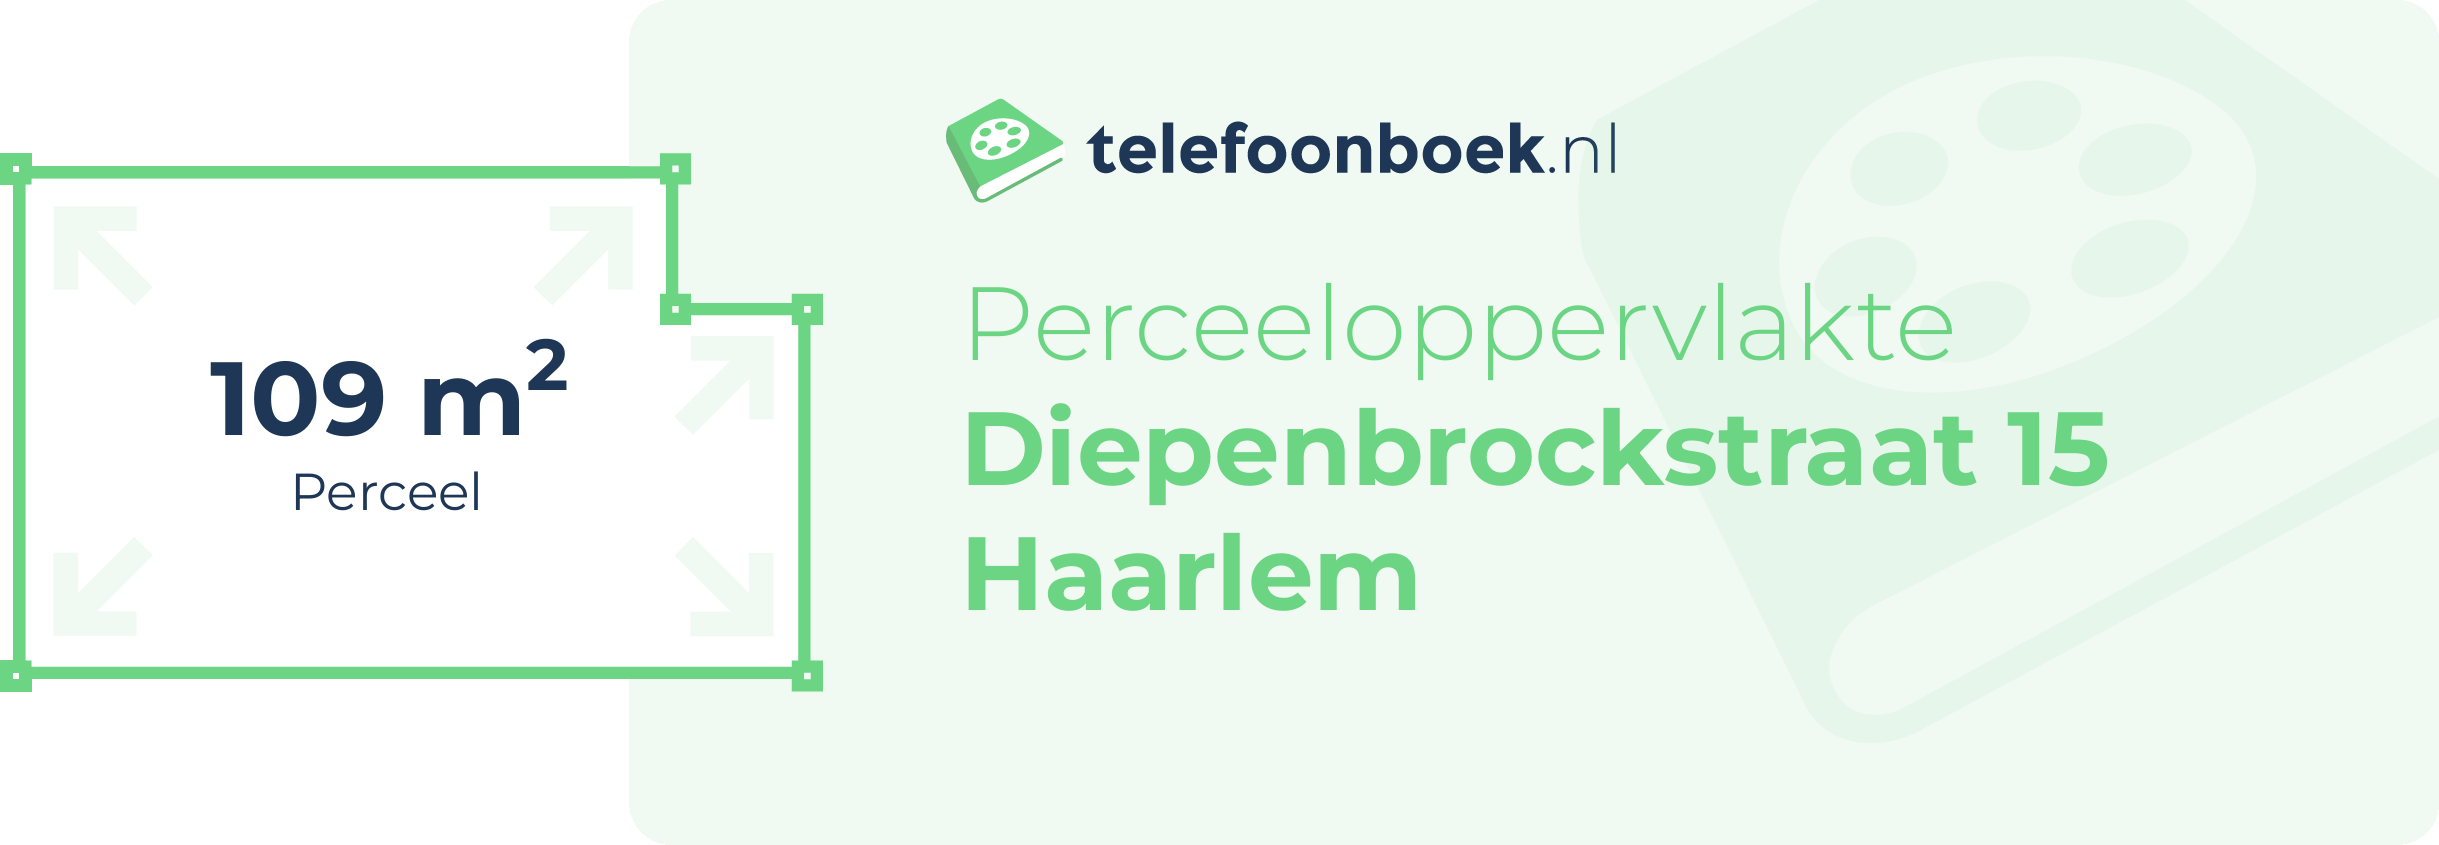 Perceeloppervlakte Diepenbrockstraat 15 Haarlem